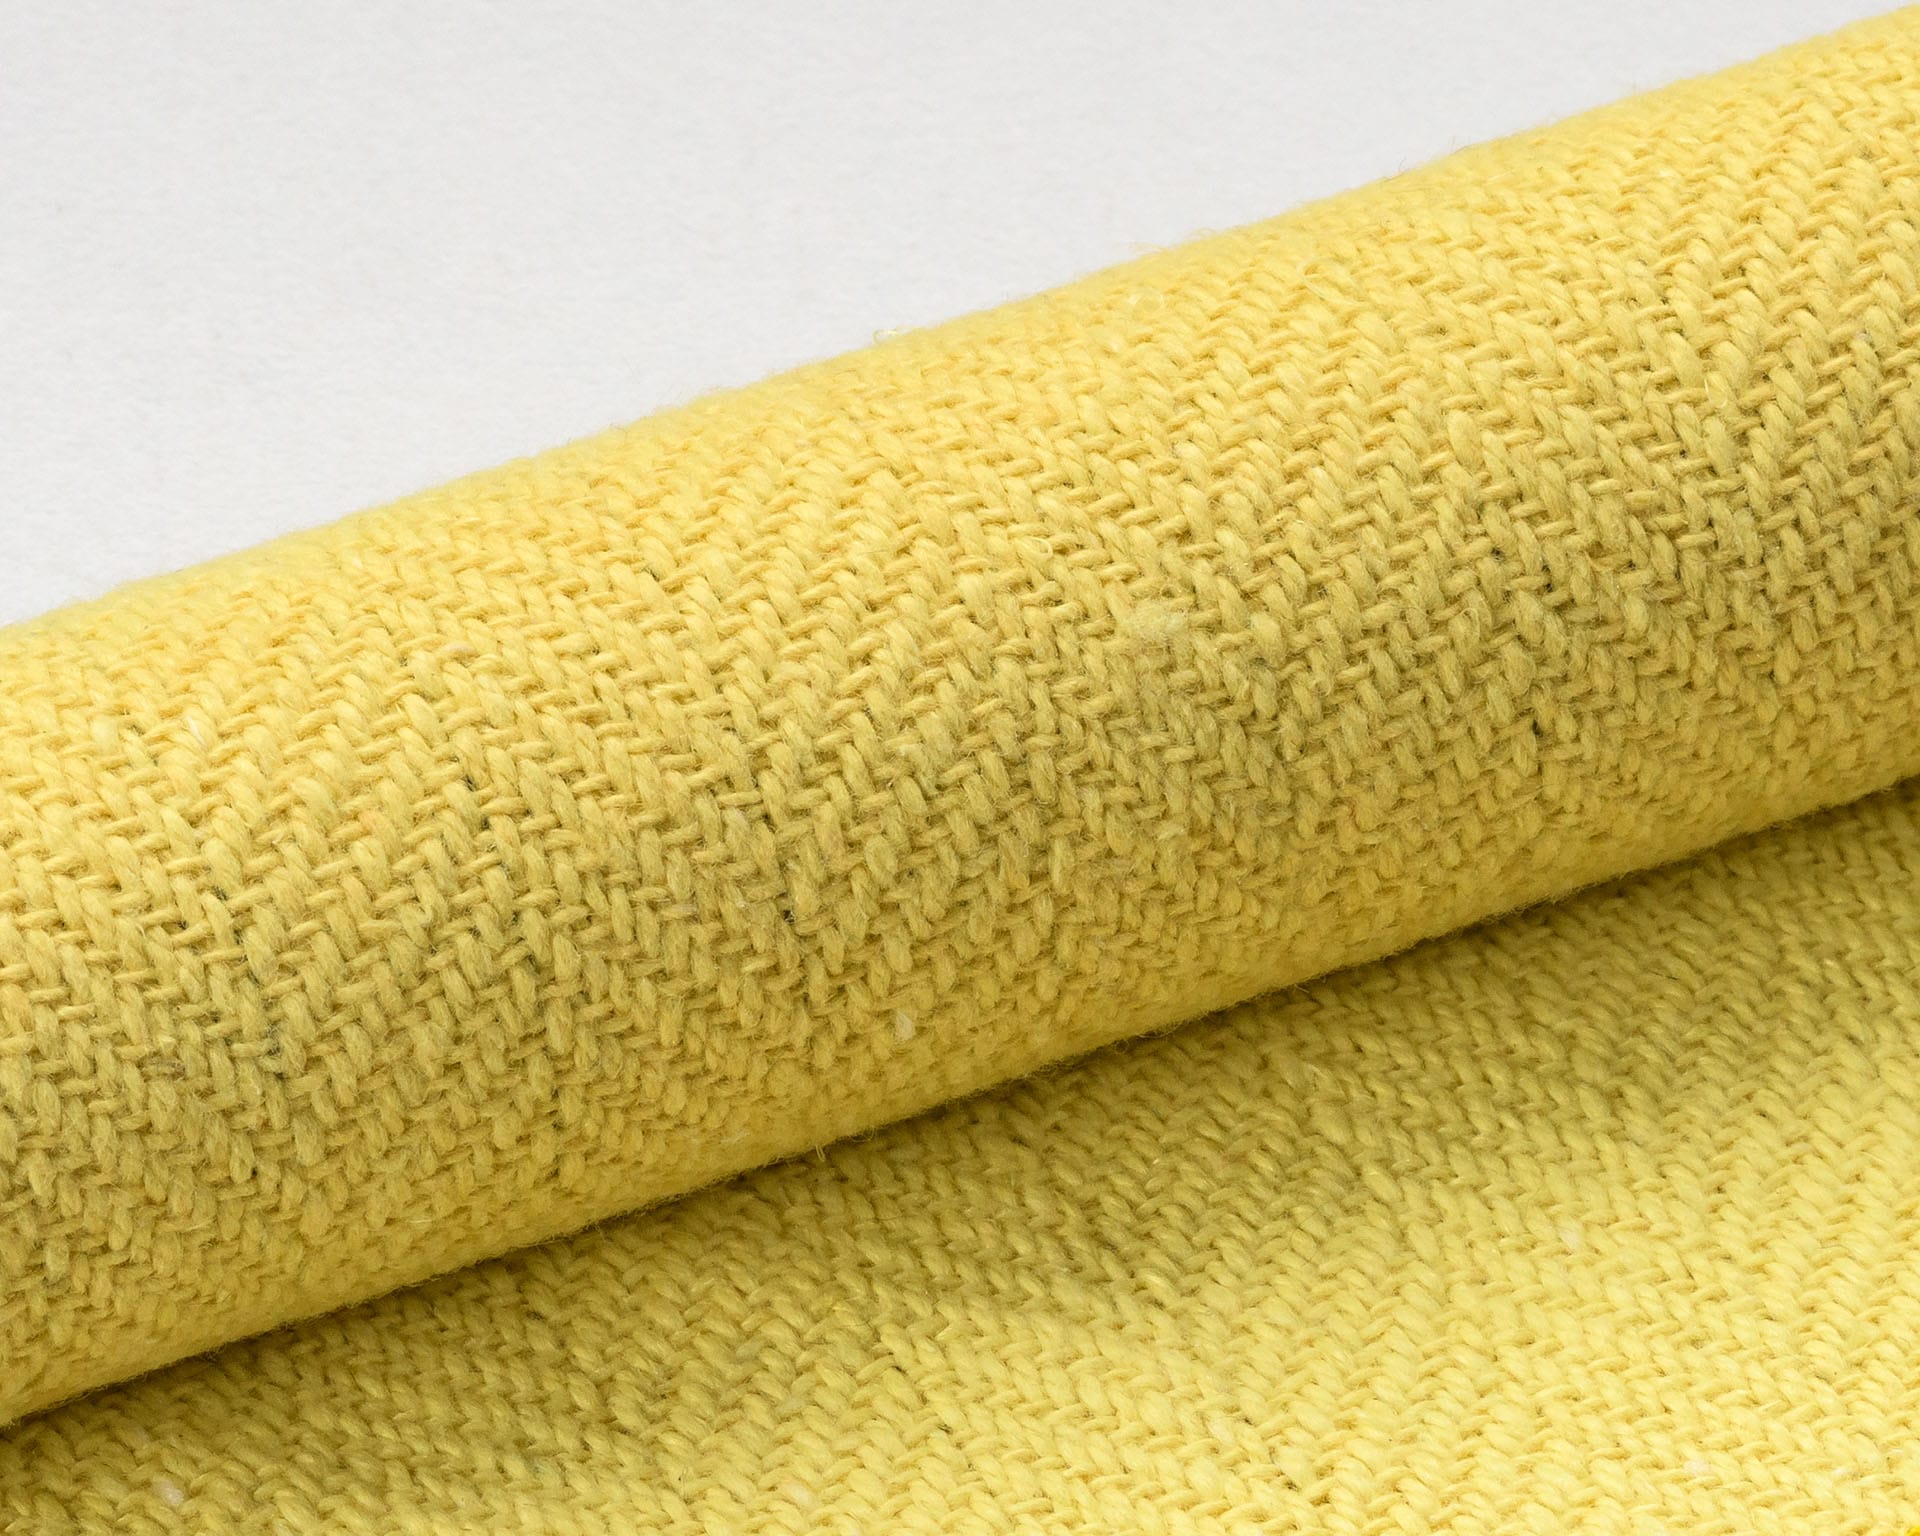 Les textiles isolants haute température fabriqués par Apronor